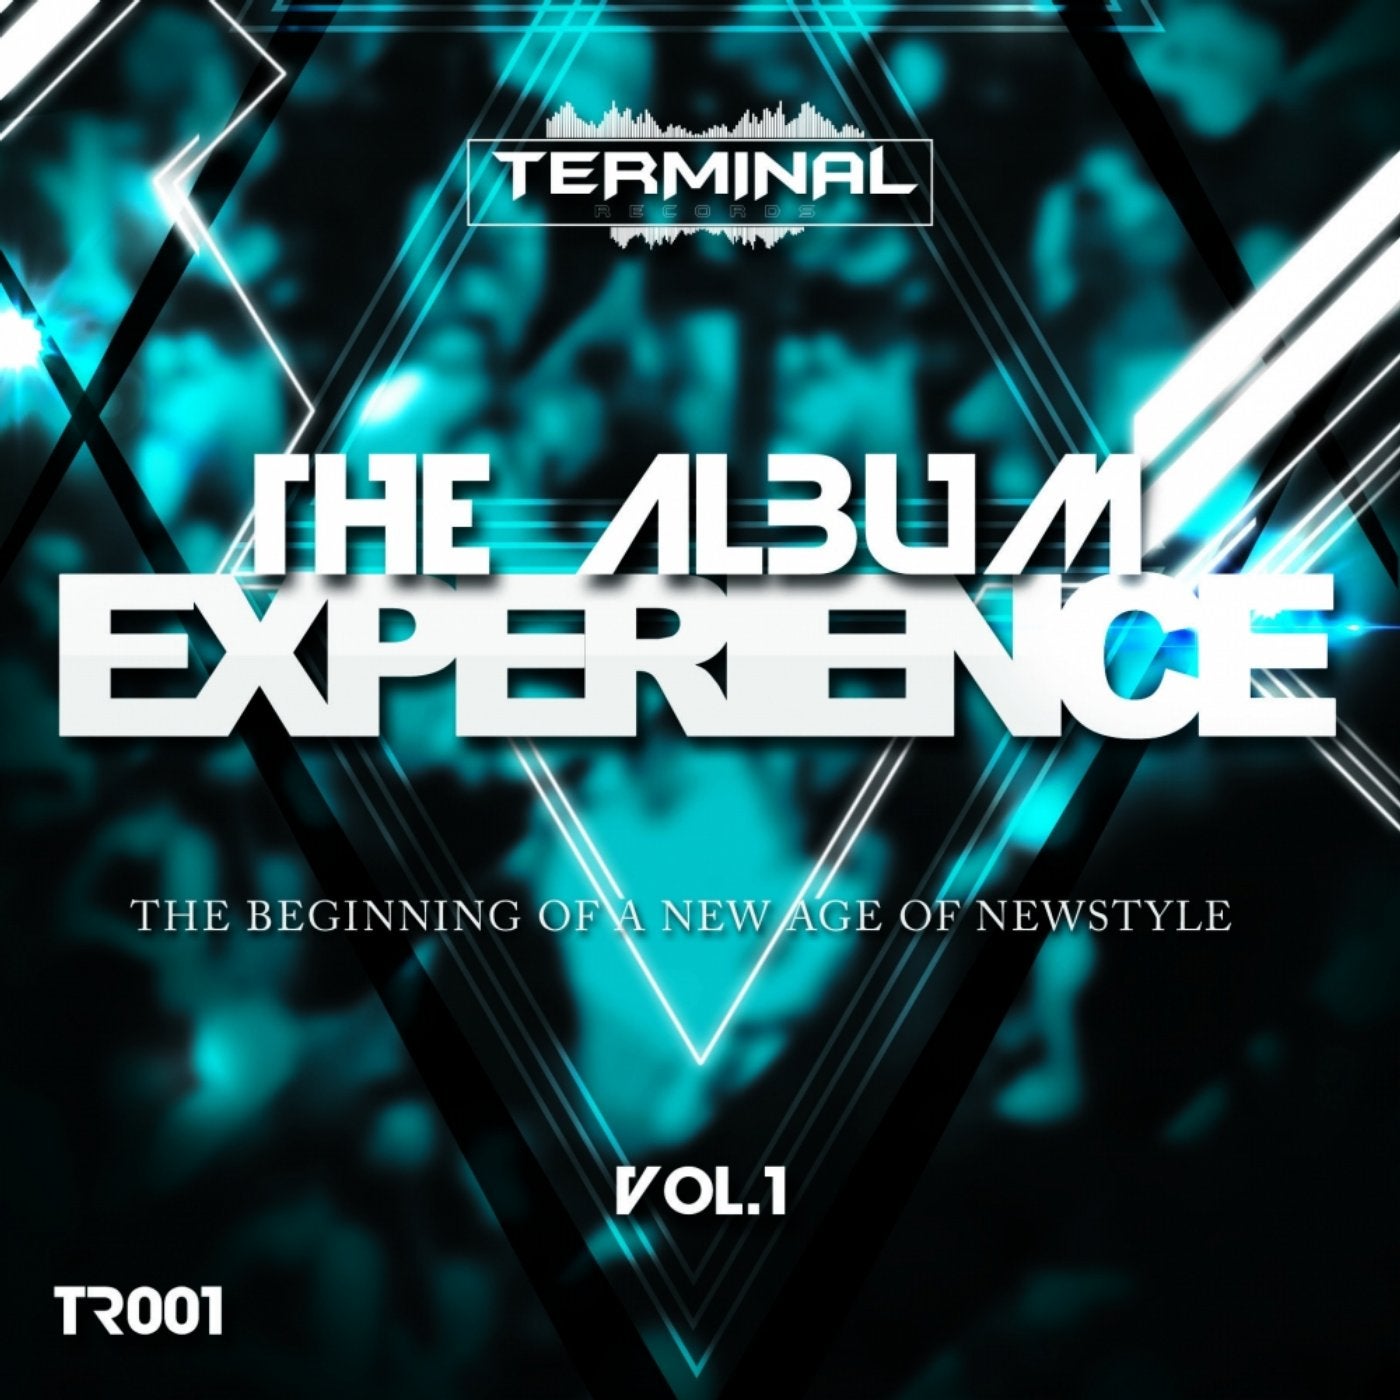 The Album Experience, Vol. 1